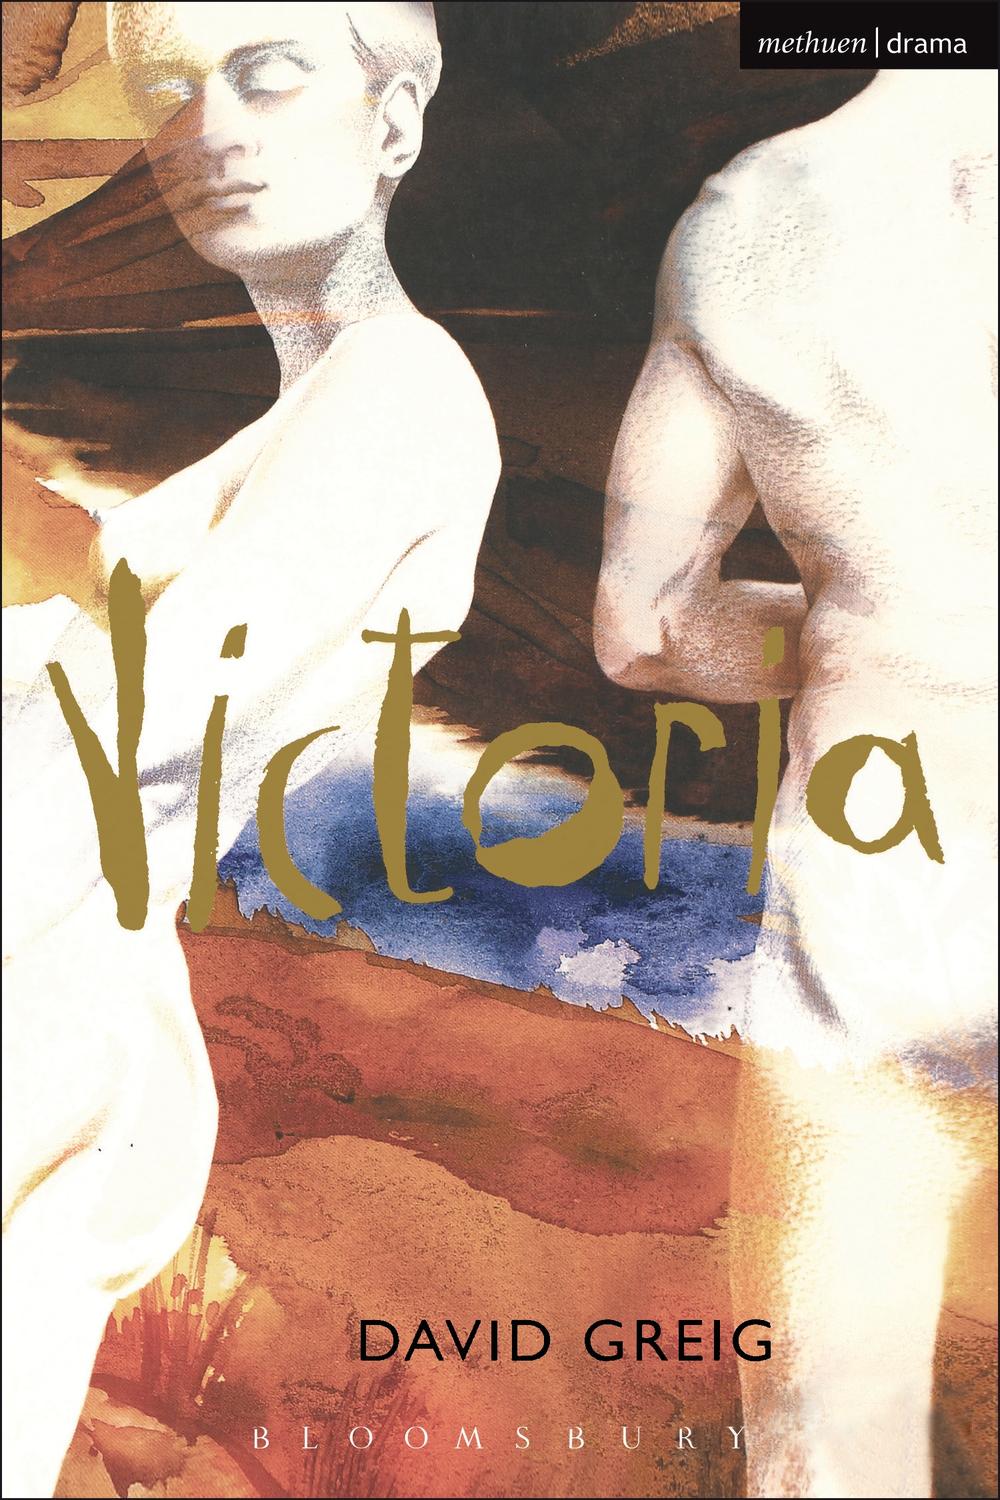 Victoria - David Greig